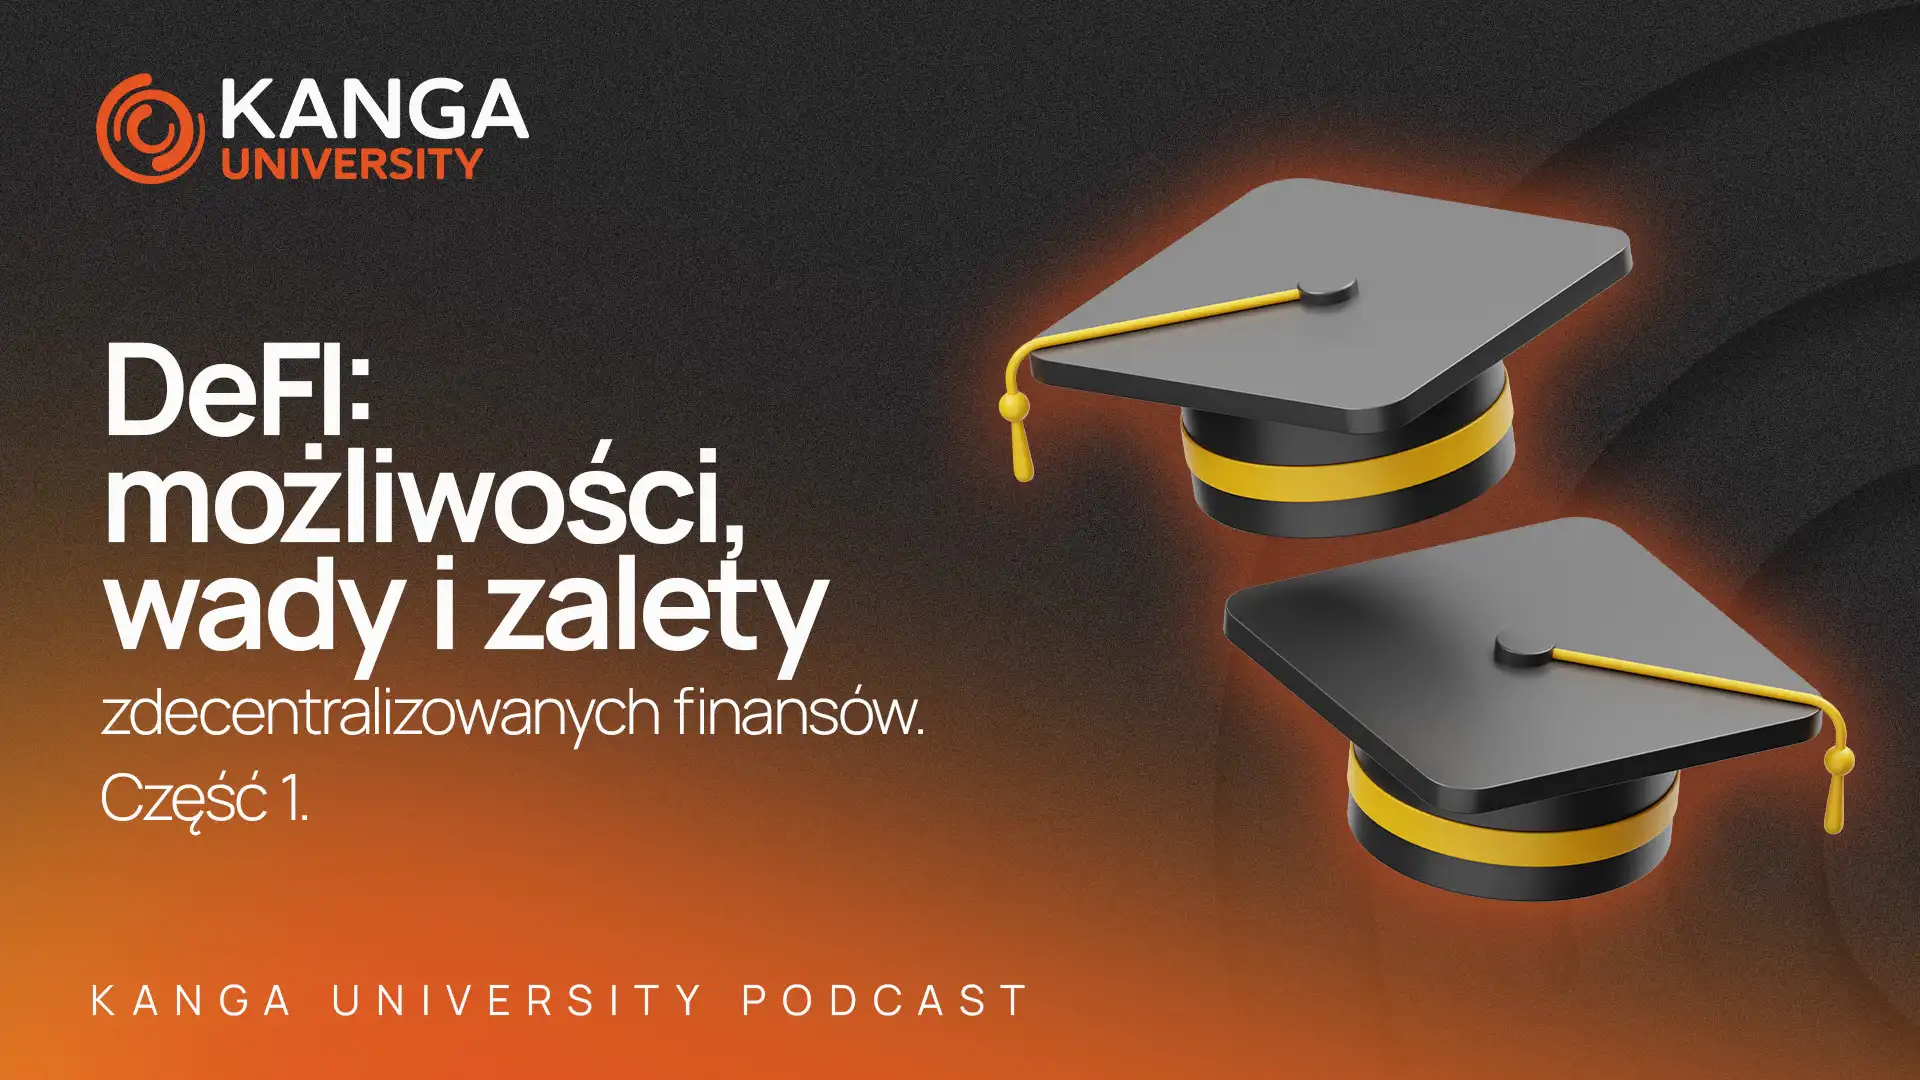 Kanga University Podcast #10 |  DeFi możliwości, wady i zalety